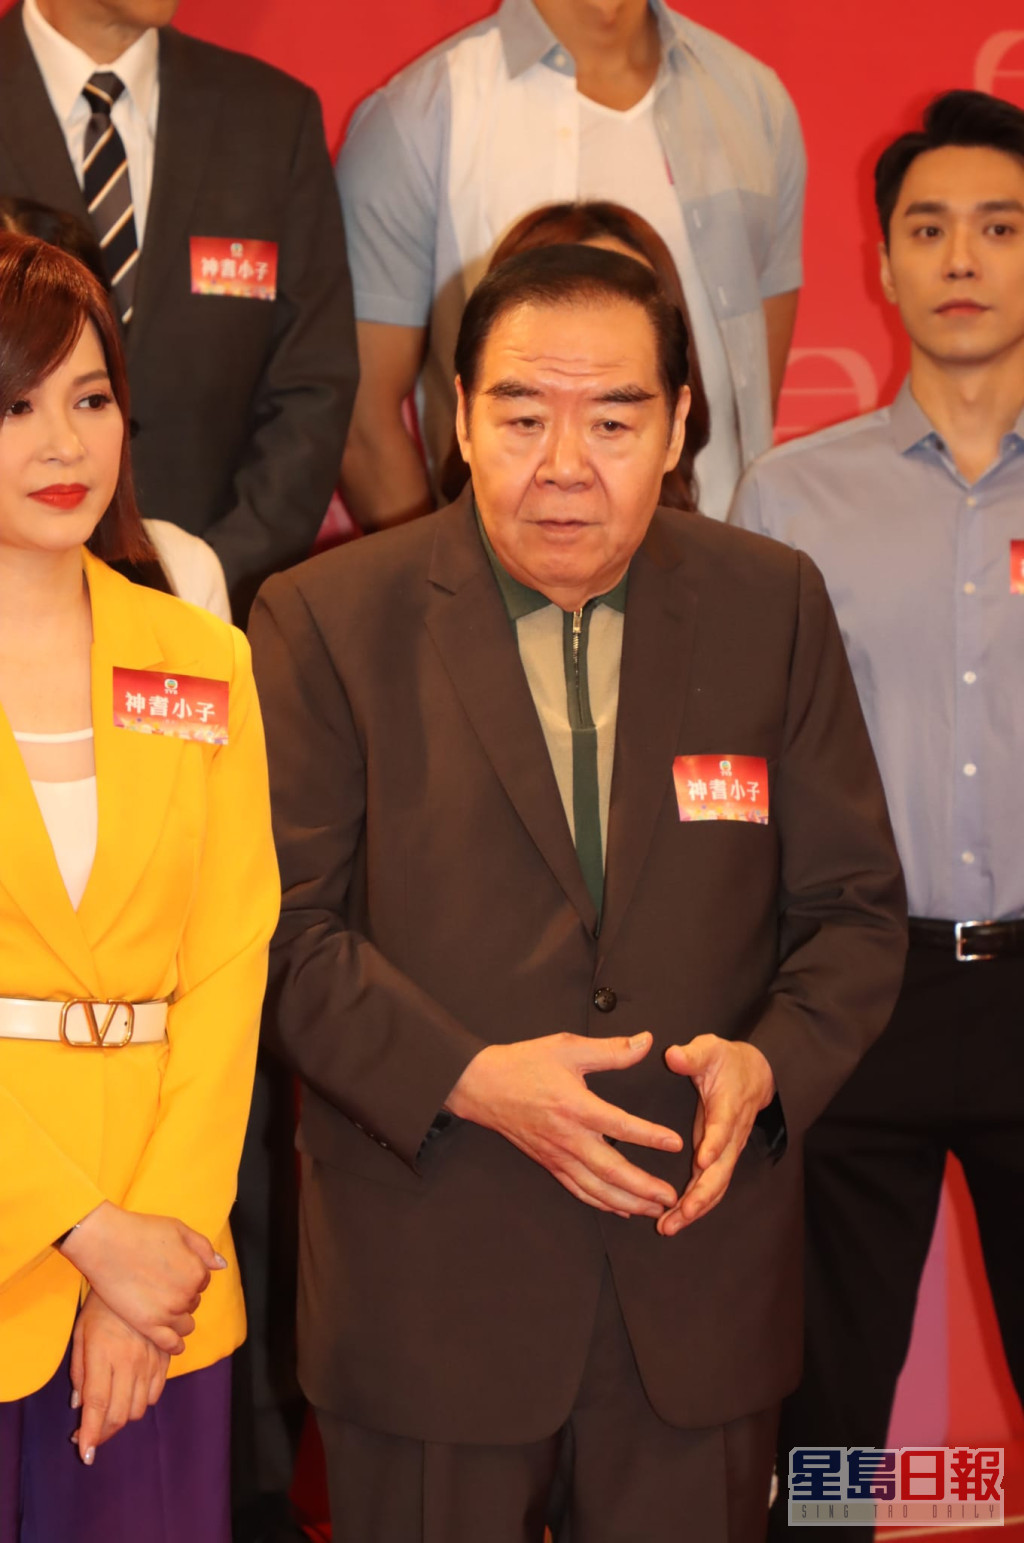 郑则士说有4、5年没有为TVB拍剧。